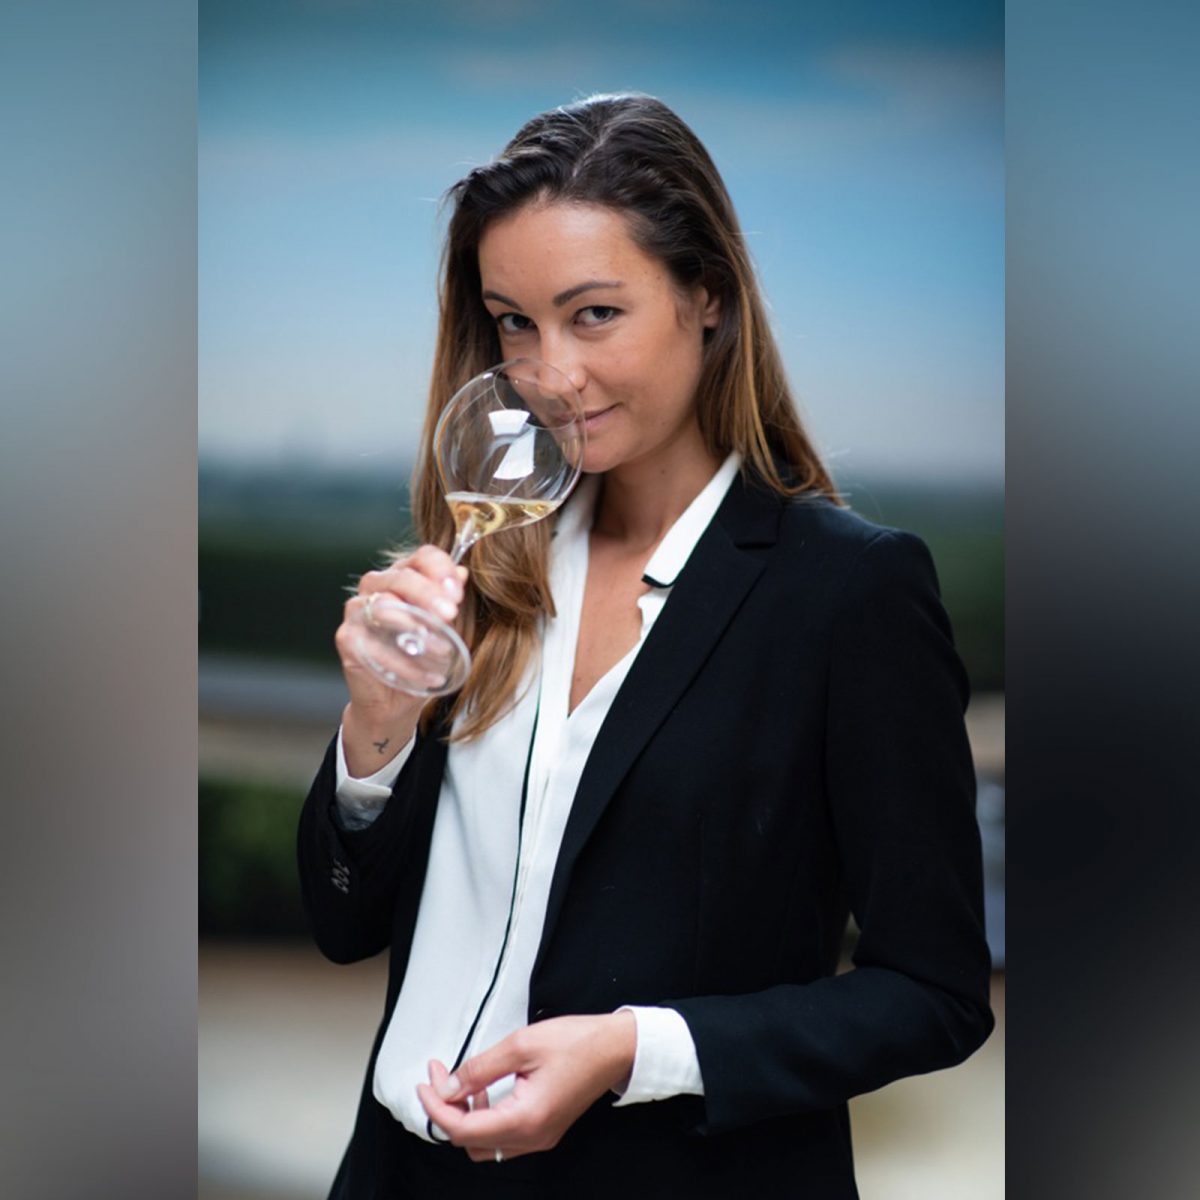 La Grande Dame 2008 - Champagne Veuve Clicquot's Prestige Cuvee